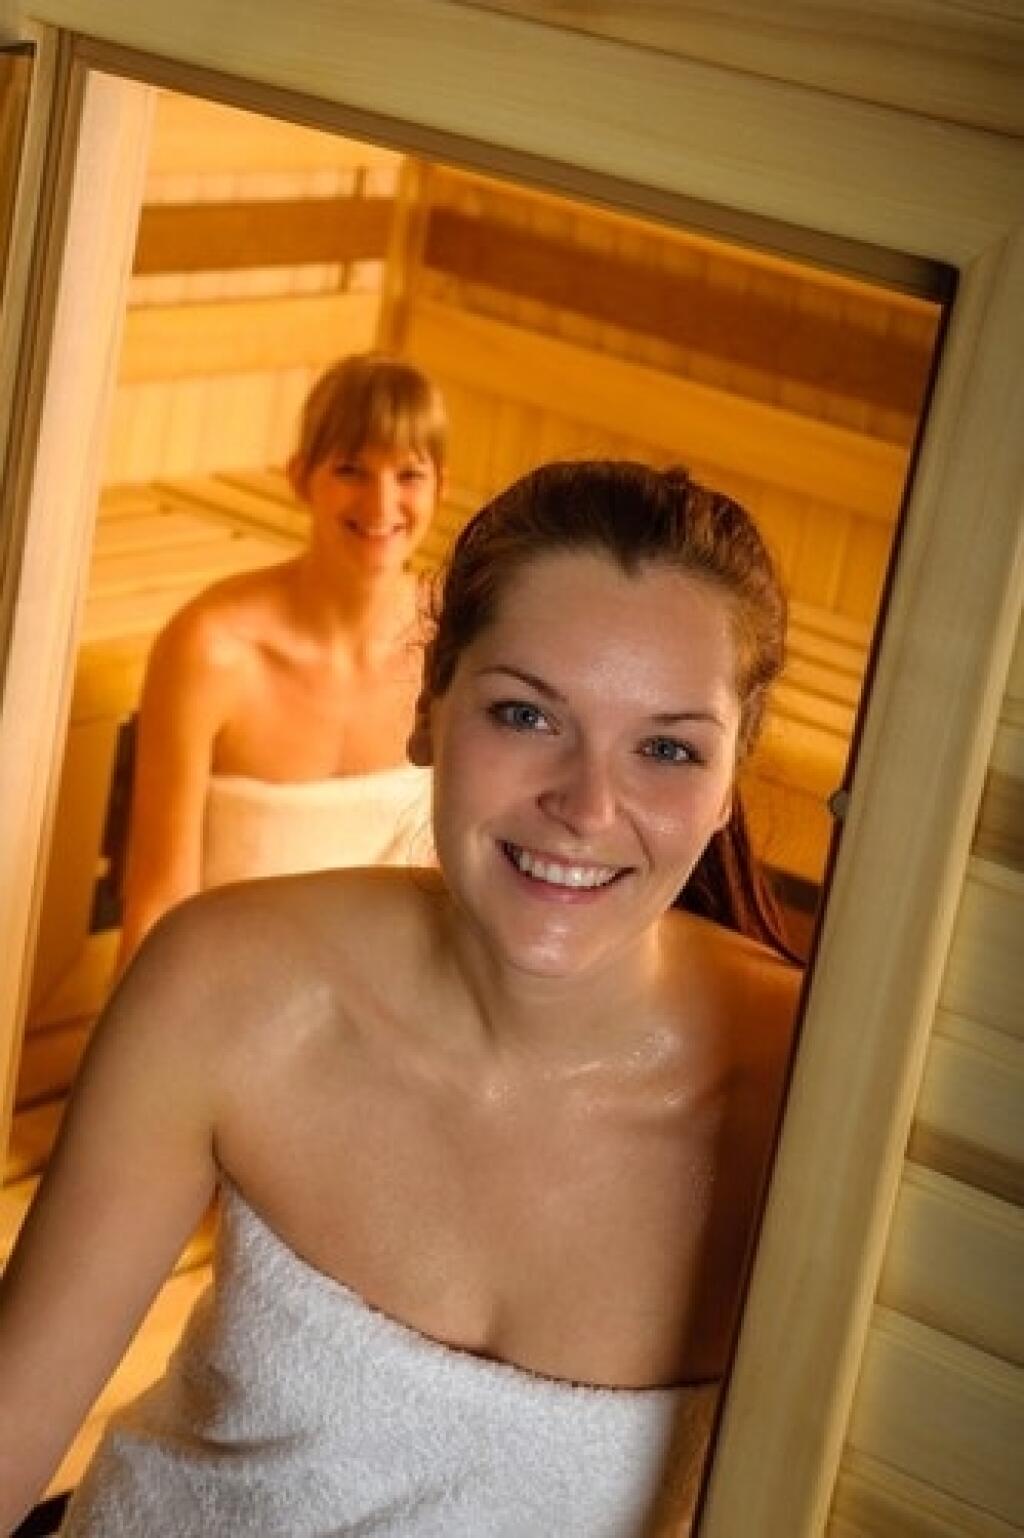 мы с сестрой моемся в бане голыми фото 103